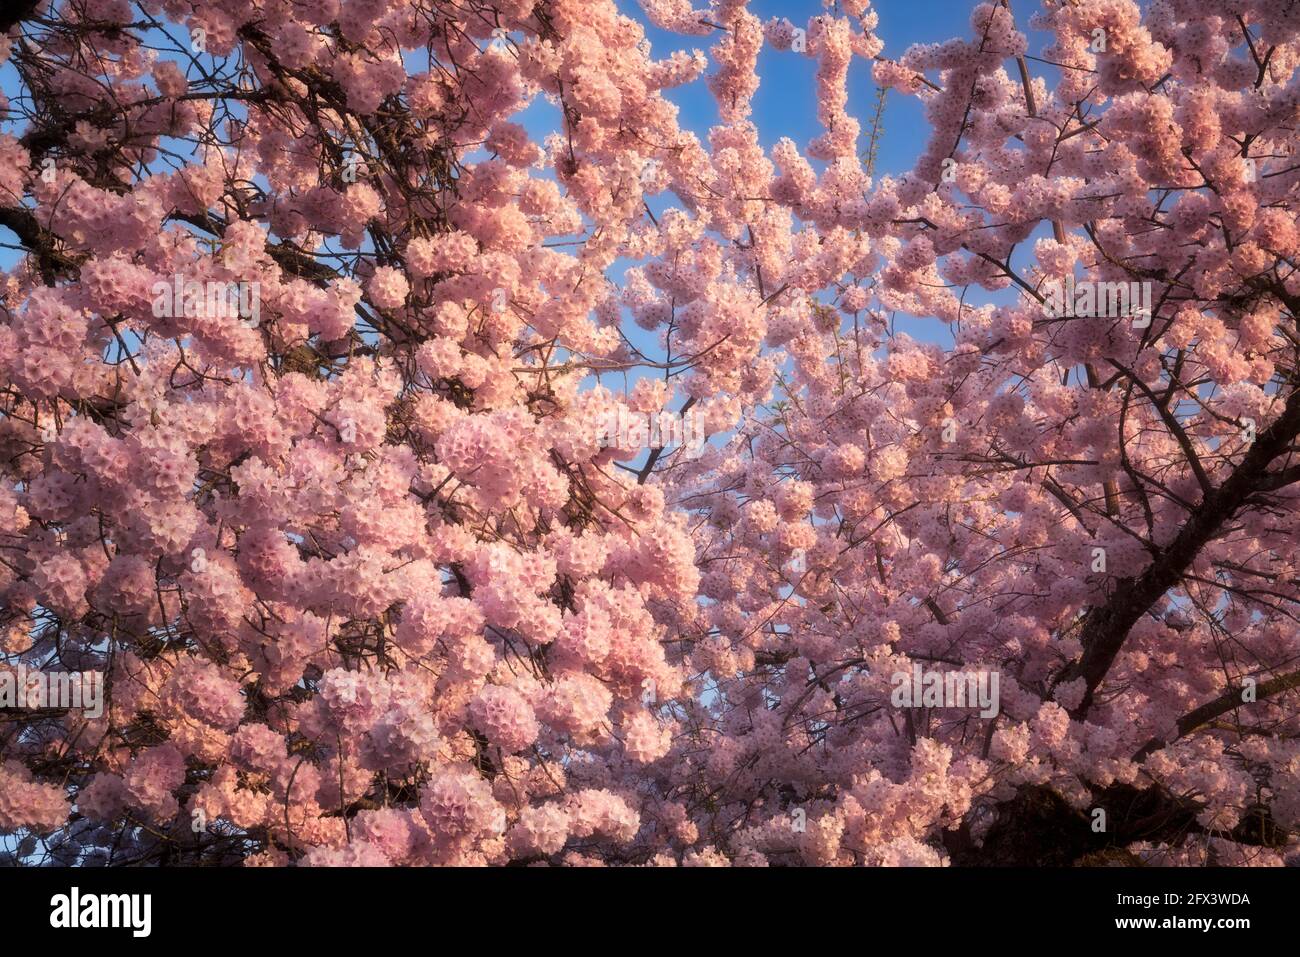 La lumière du soir s'illumine sur ces cerisiers japonais fleuris au printemps que l'on trouve dans de nombreux quartiers urbains du comté de Multnomah, en Oregon. Banque D'Images